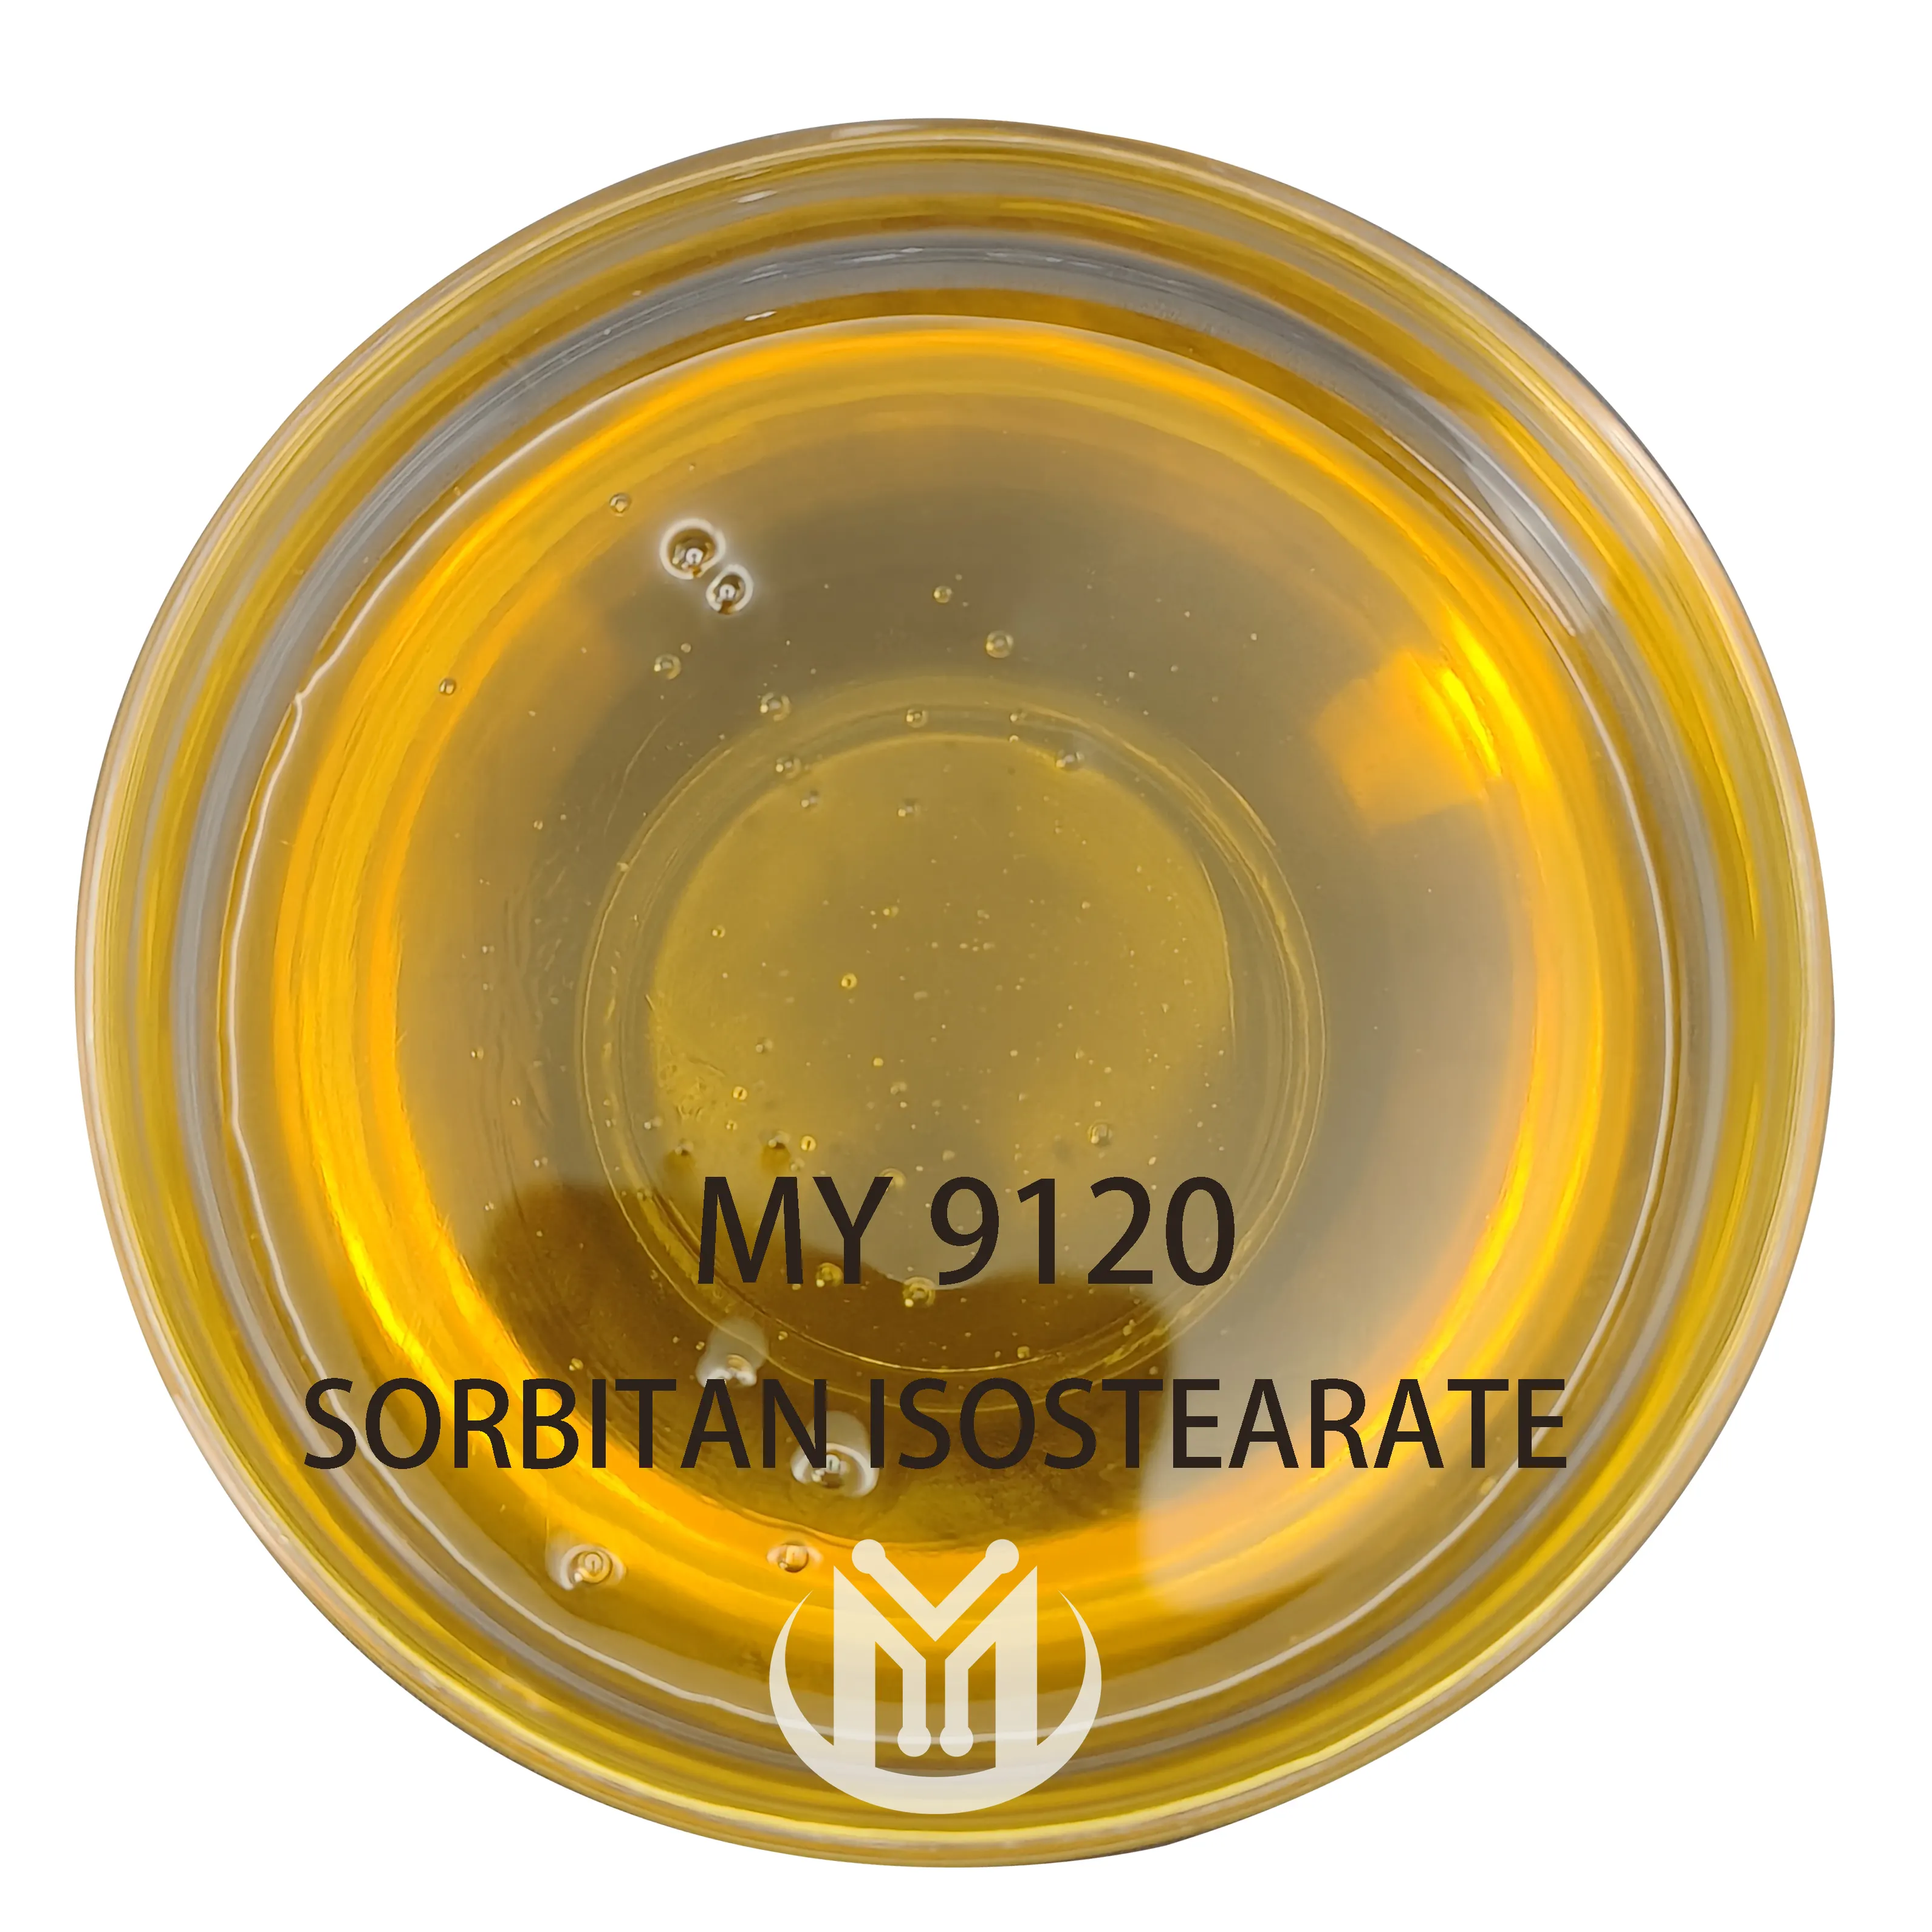 Hóa chất hàng ngày span 120 CAS: 71902-01-7 Sorbitan isostearate nonionic cấp công nghiệp chất lượng cao mỹ phẩm nguyên liệu